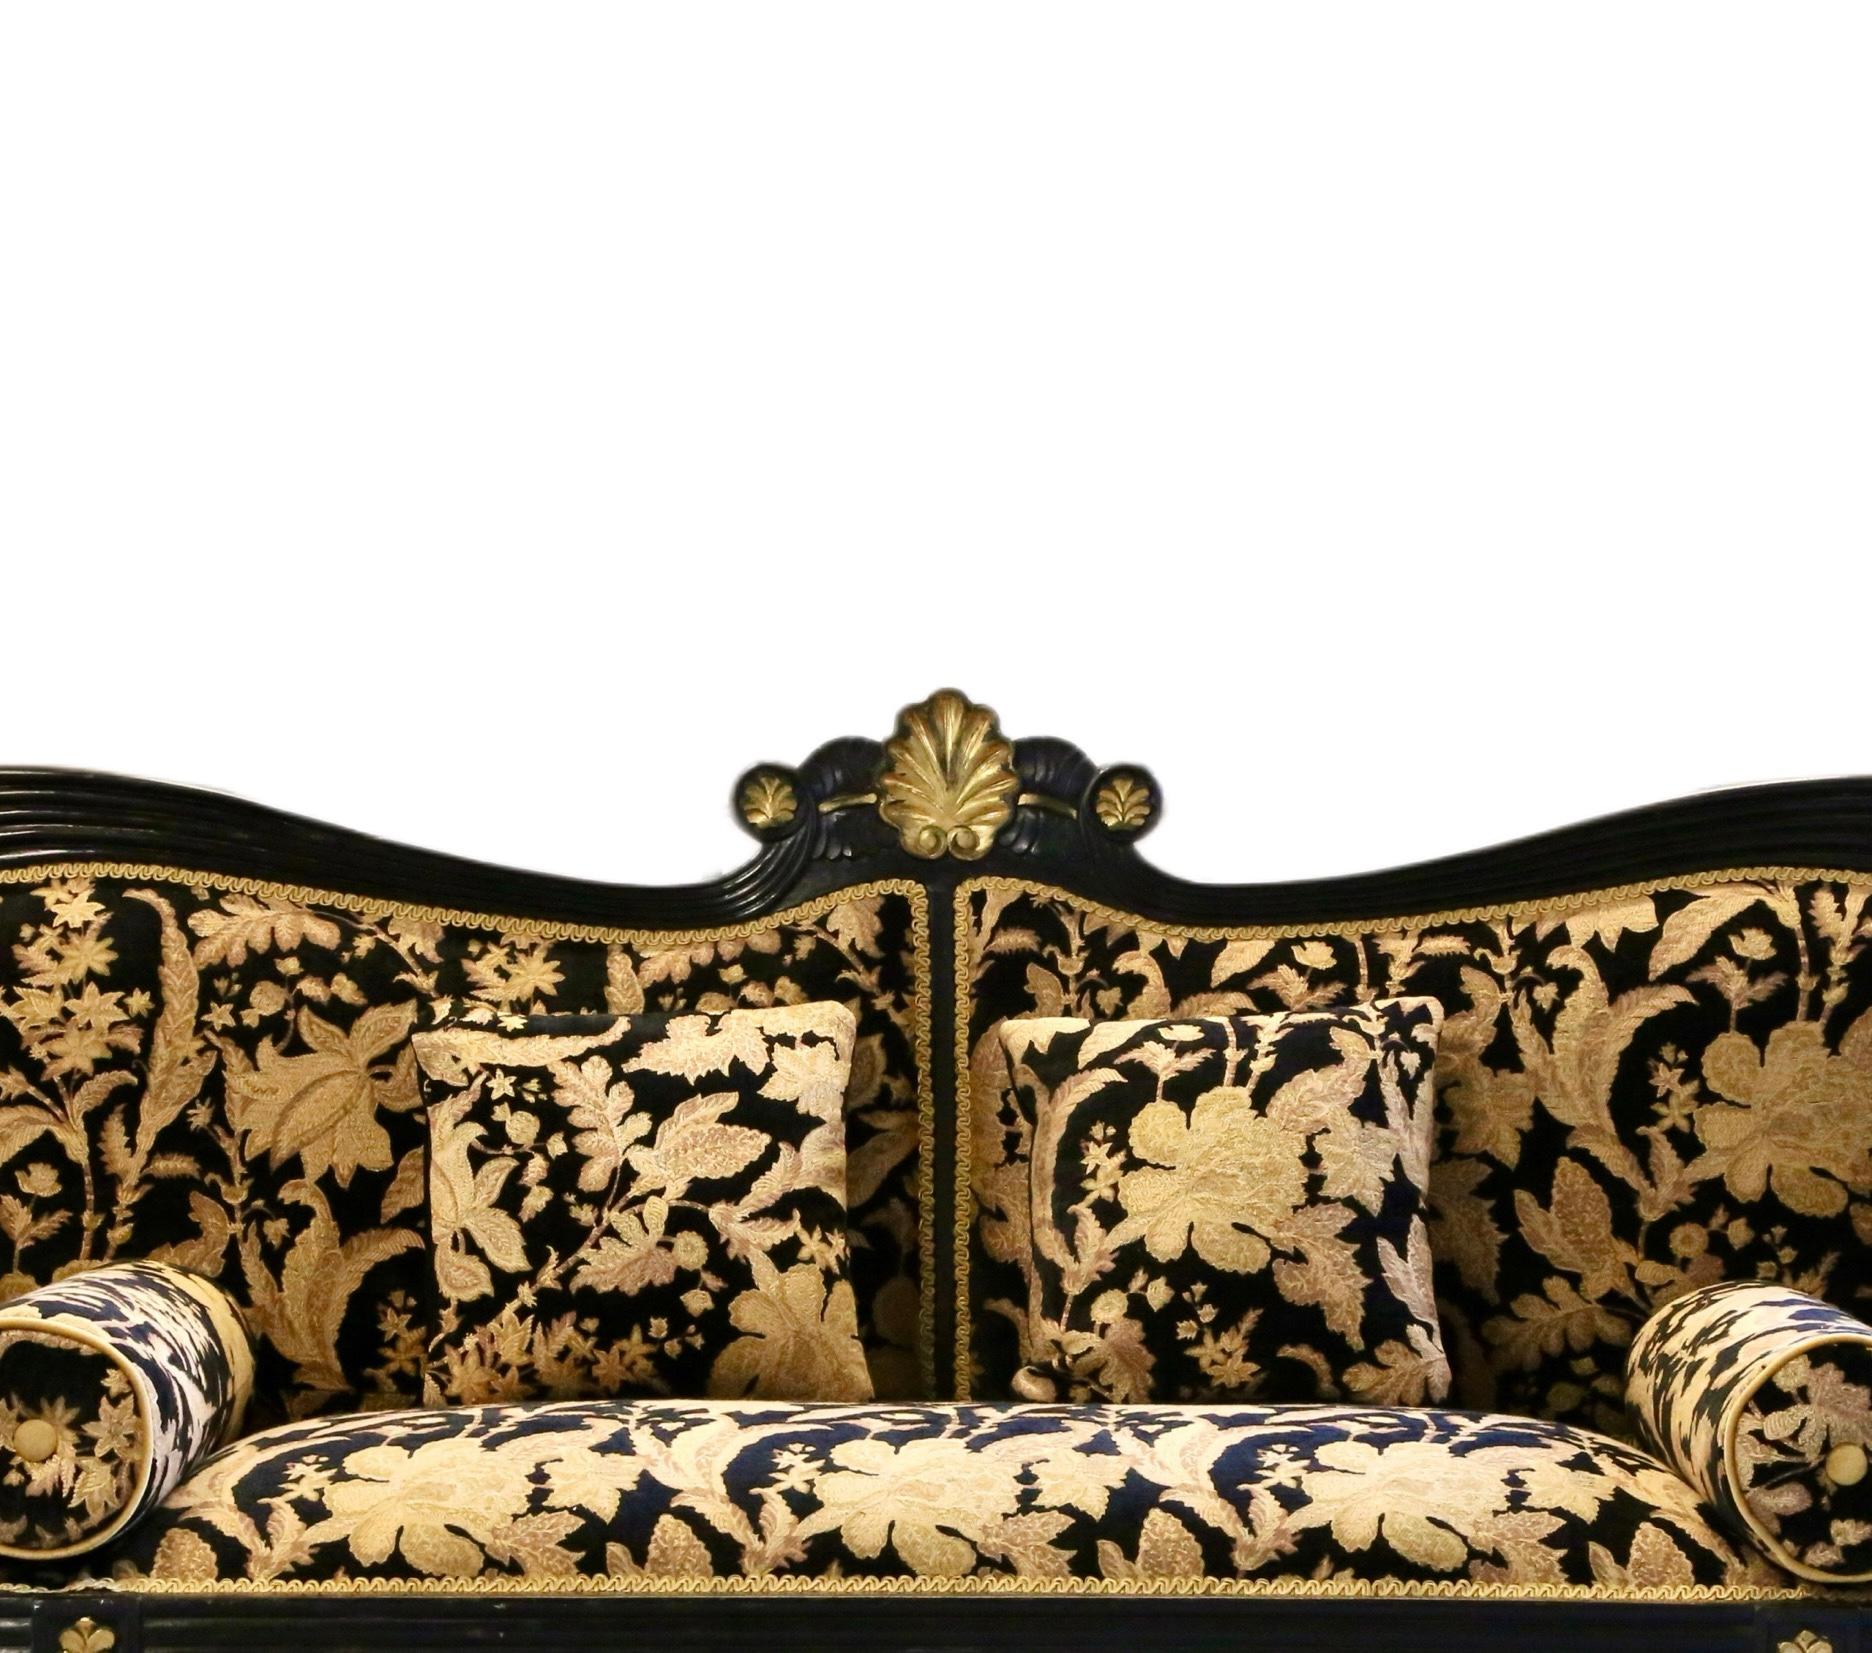 Tauchen Sie ein in die fesselnde und opulente Welt der Regency-/Empire-Zeit mit diesem exquisiten Doppelsofa, einer harmonischen Mischung aus exquisiter Handwerkskunst und zeitlosem Design, die Eleganz und Grandeur verkörpert. Das mit viel Liebe zum